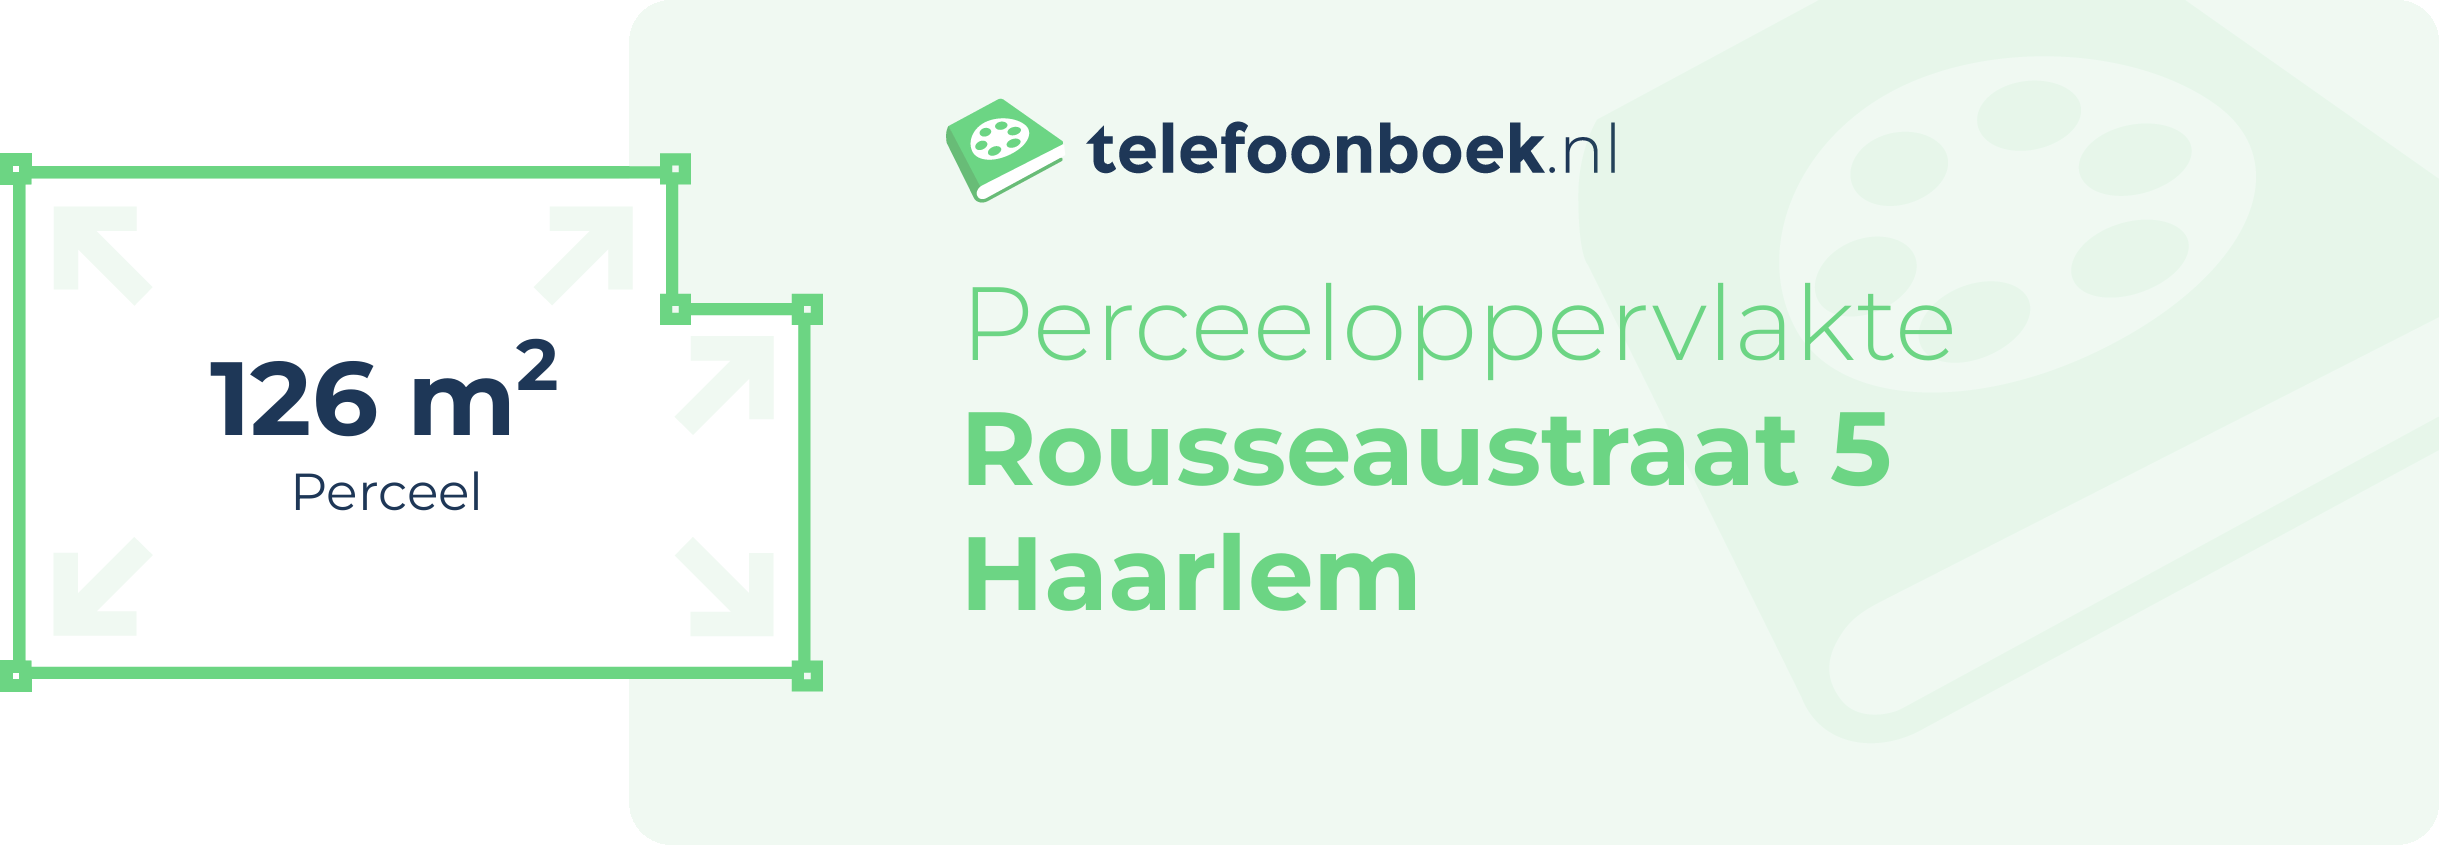 Perceeloppervlakte Rousseaustraat 5 Haarlem